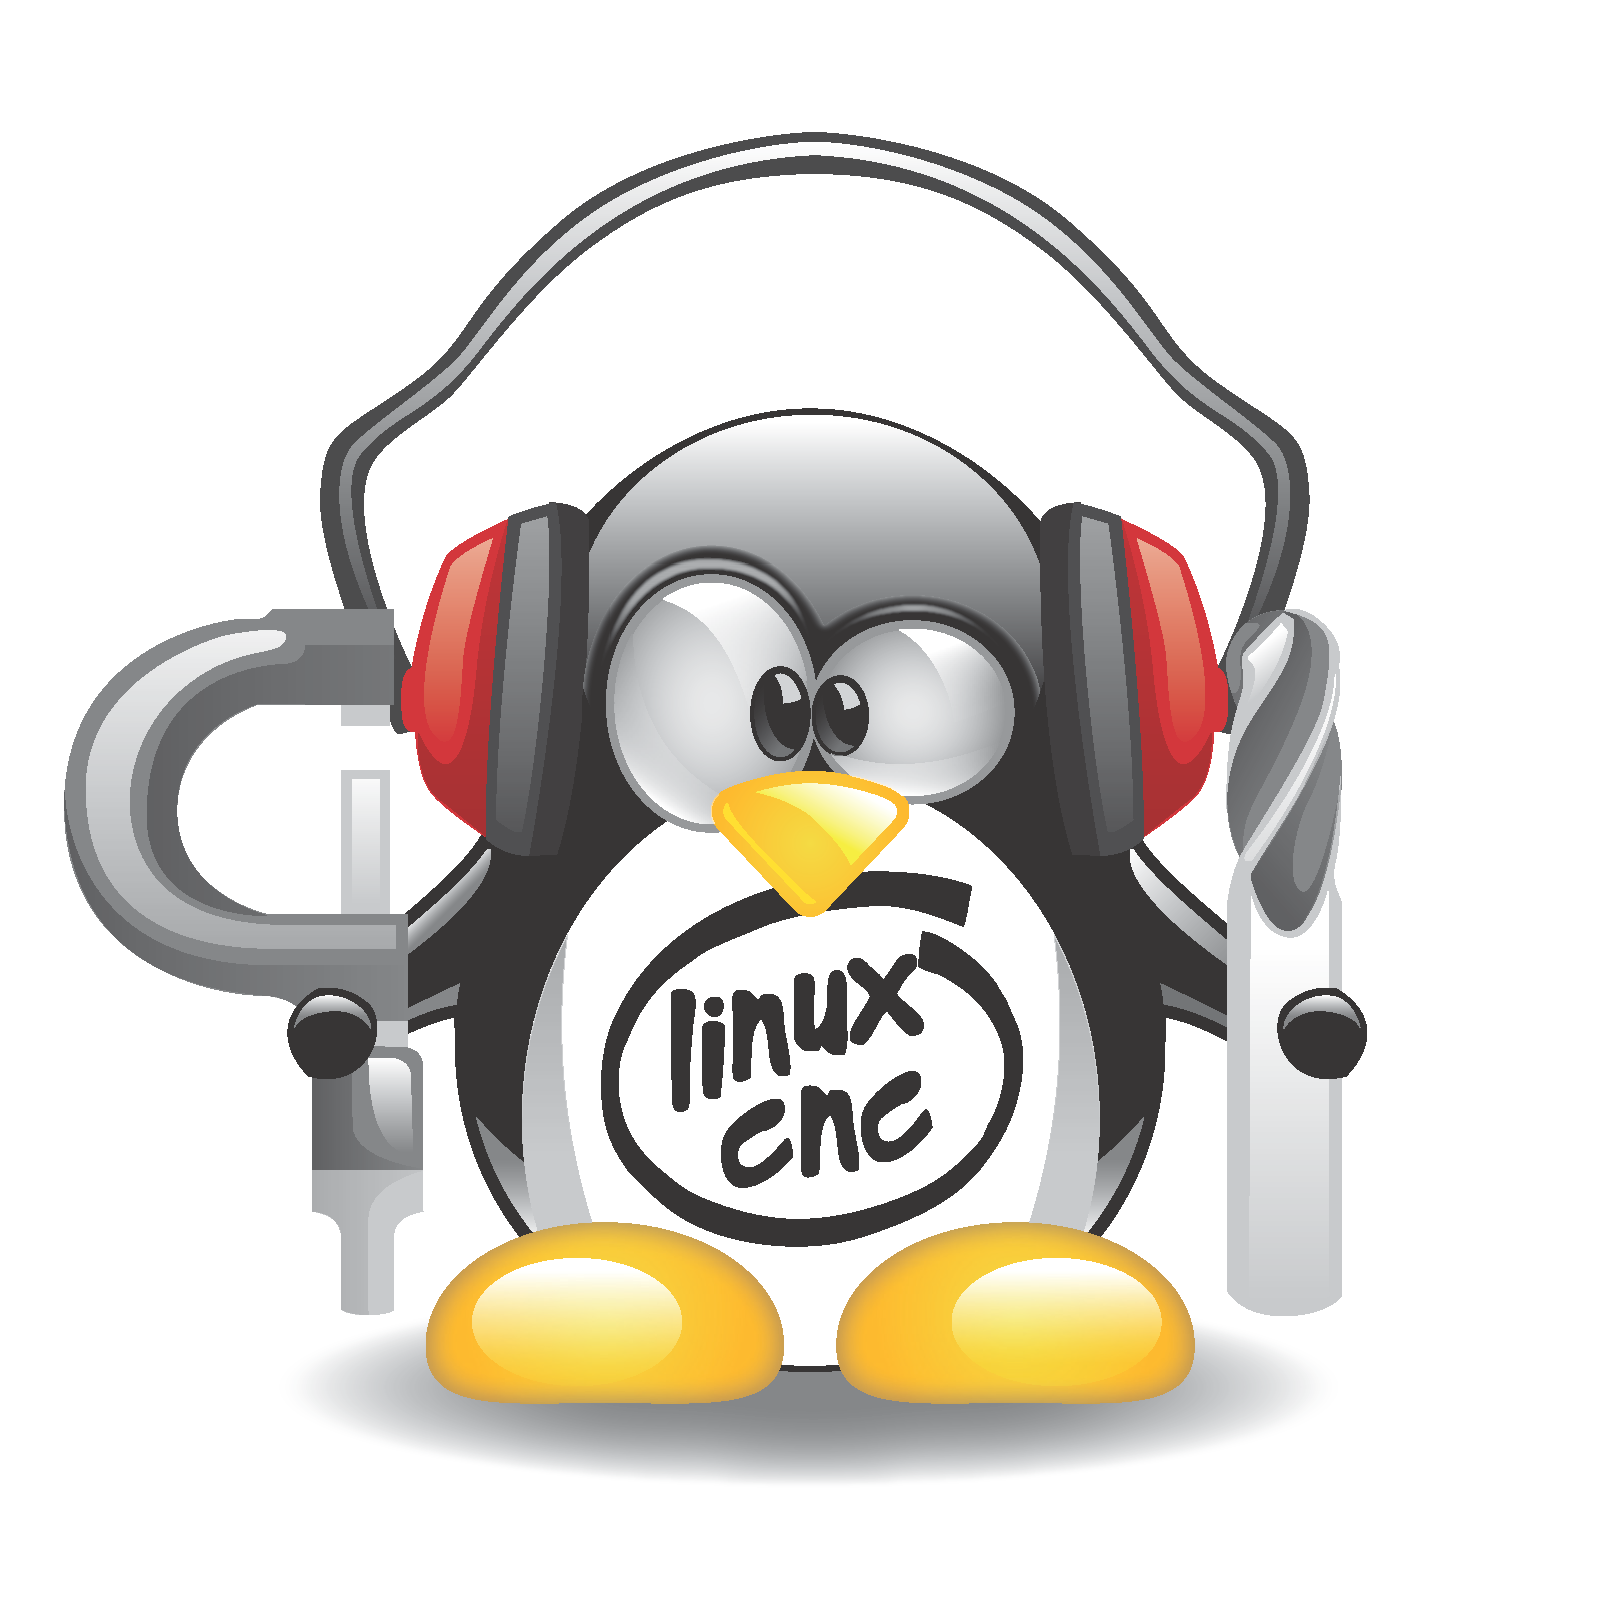 LinuxCNC_mascot2.png